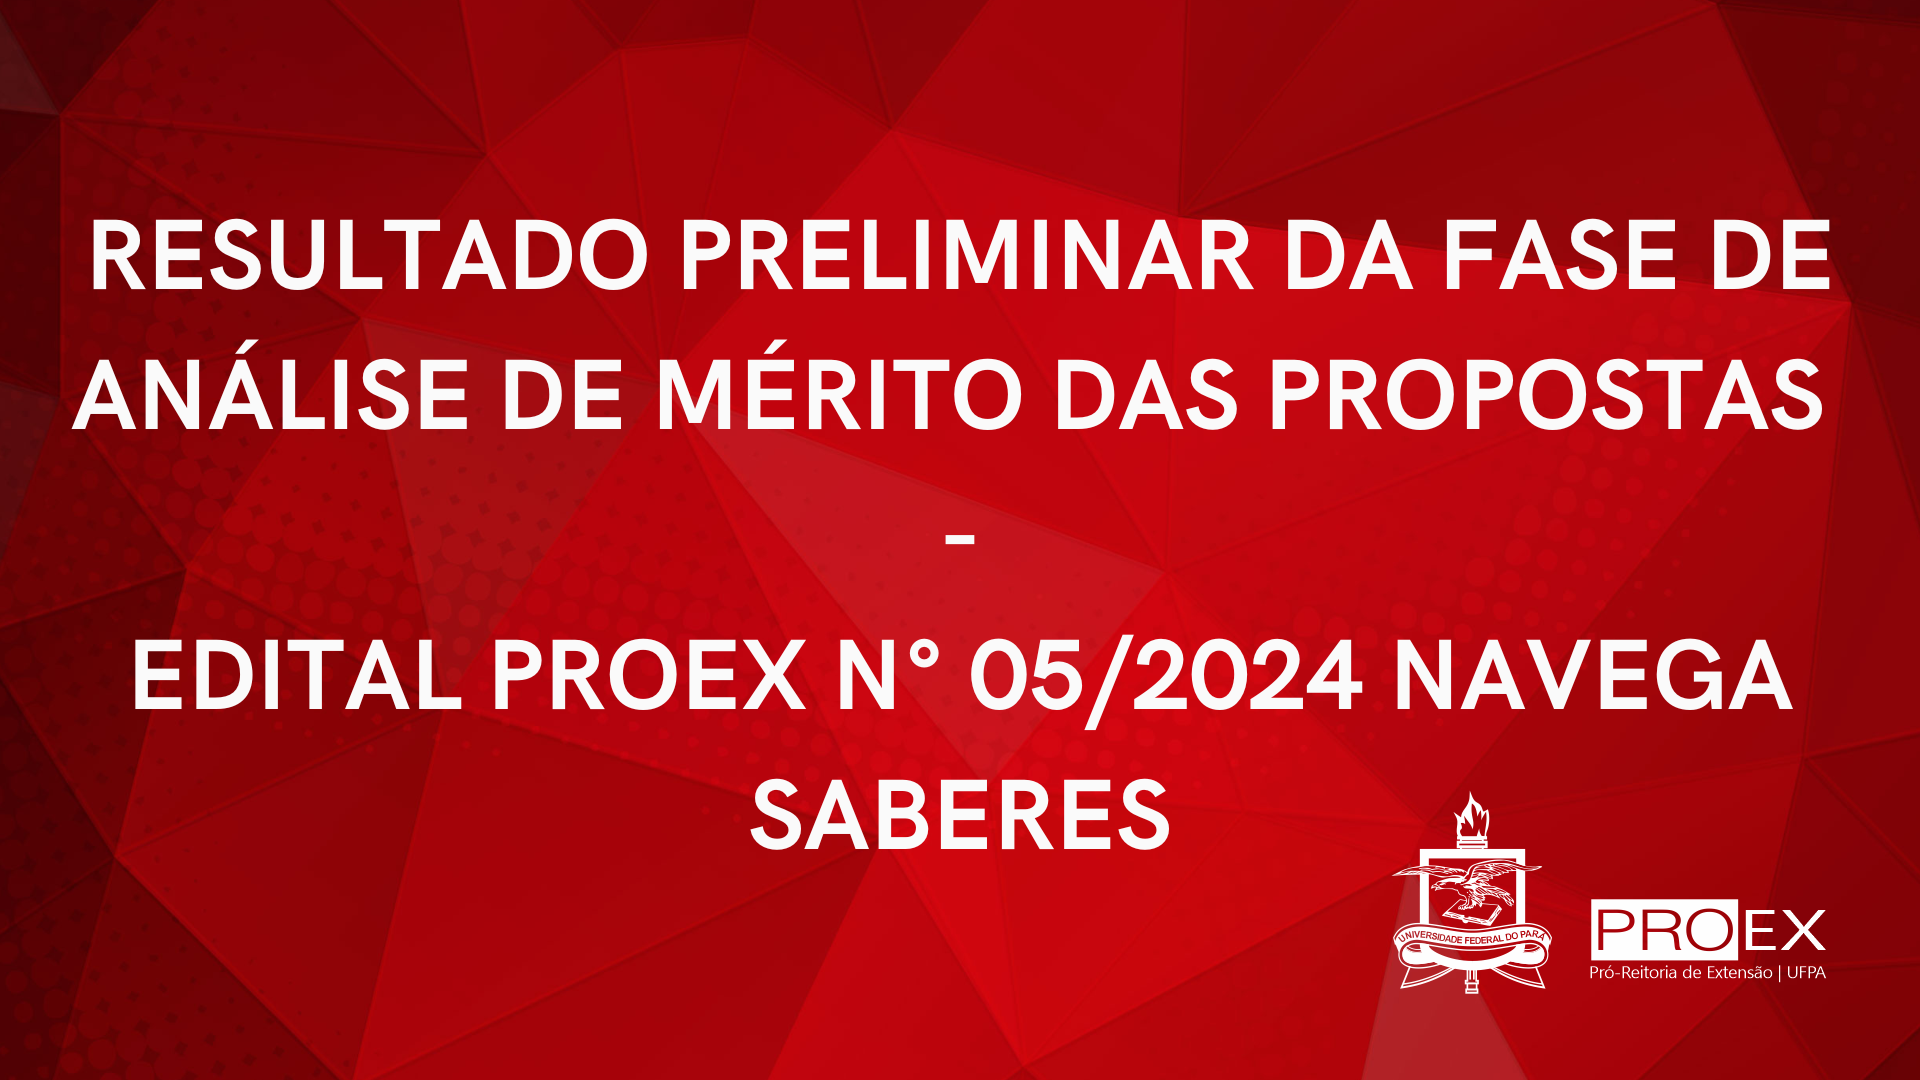 RESULTADO PRELIMINAR DA FASE DE ANÁLISE DE MÉRITO - NAVEGA SABERES 2024